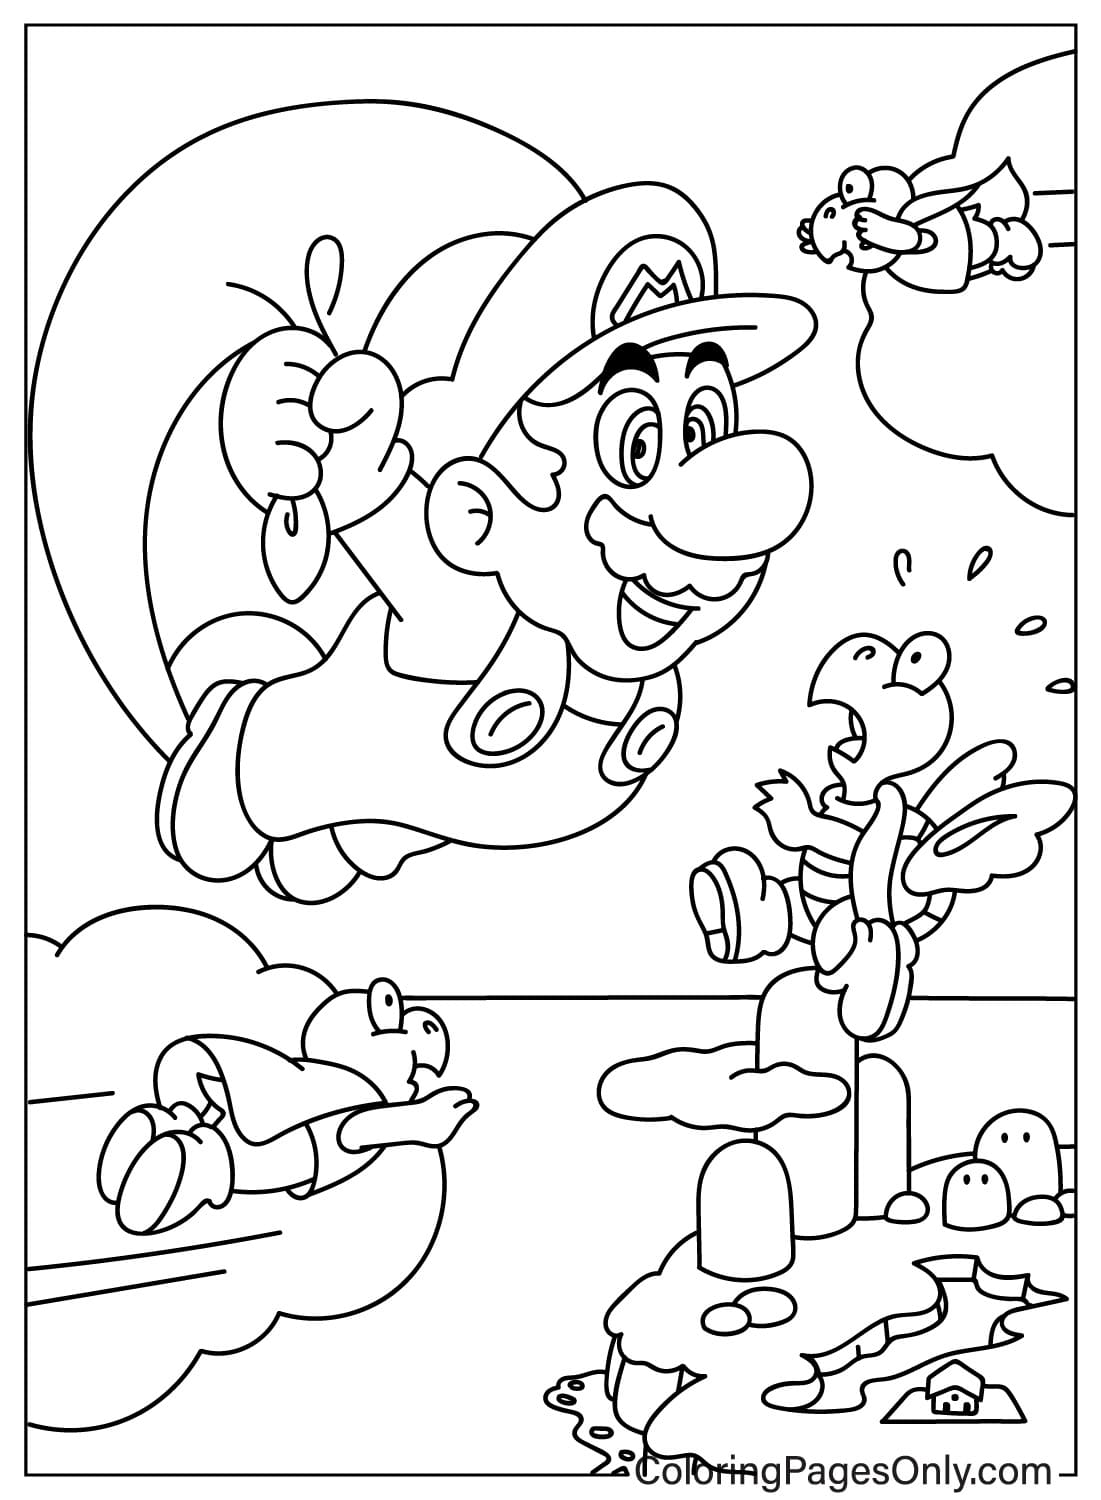 Página para colorir de Mario e Koopa Troopa de Mario